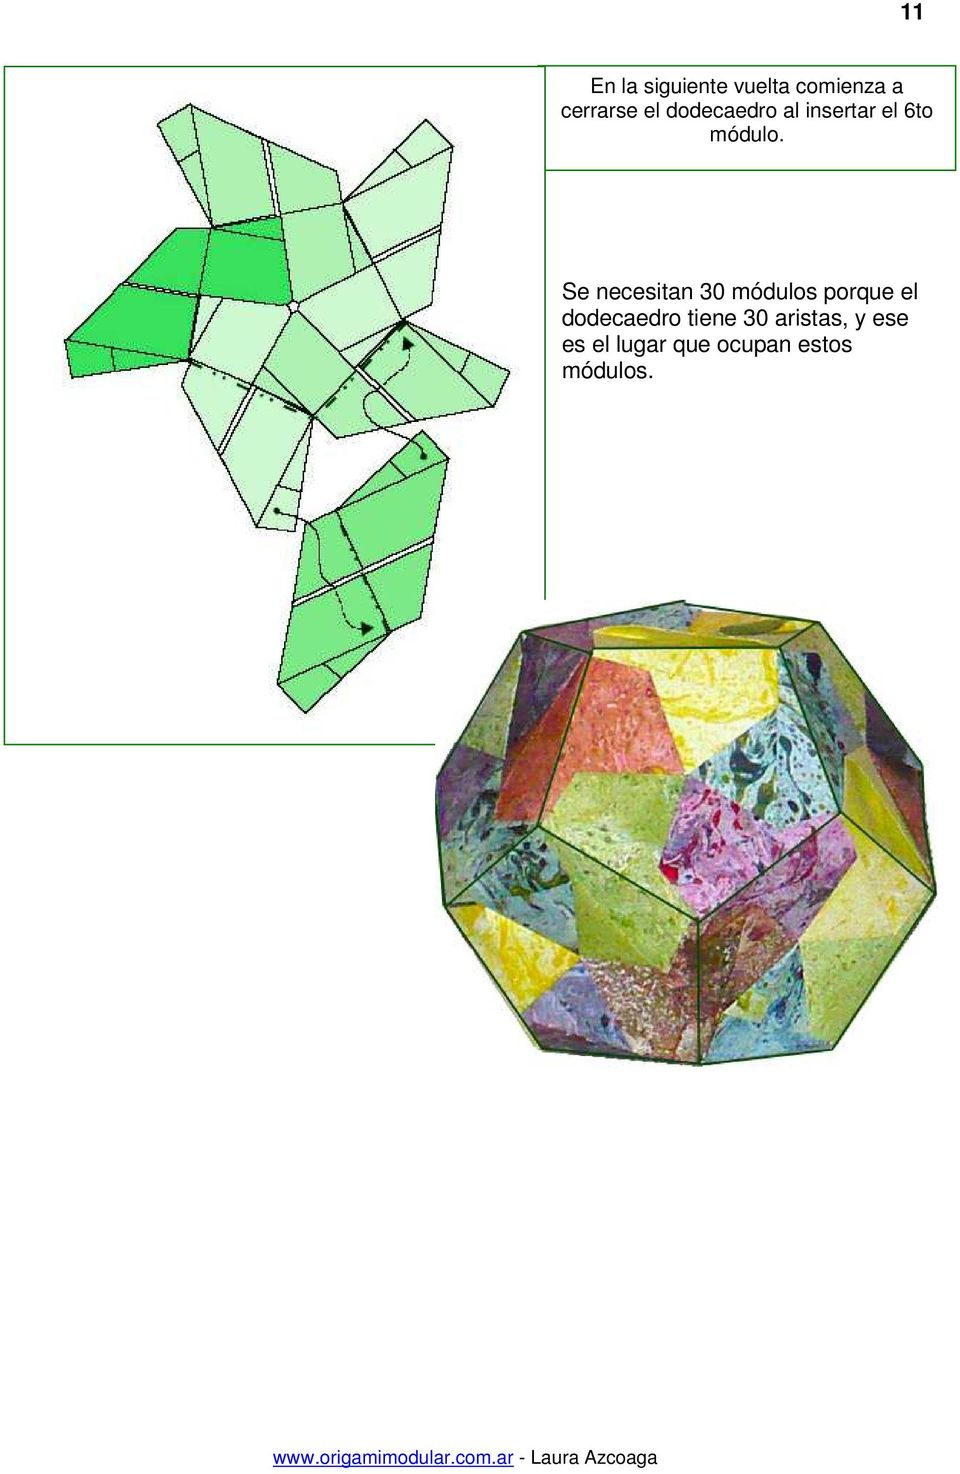 Se necesitan 30 módulos porque el dodecaedro